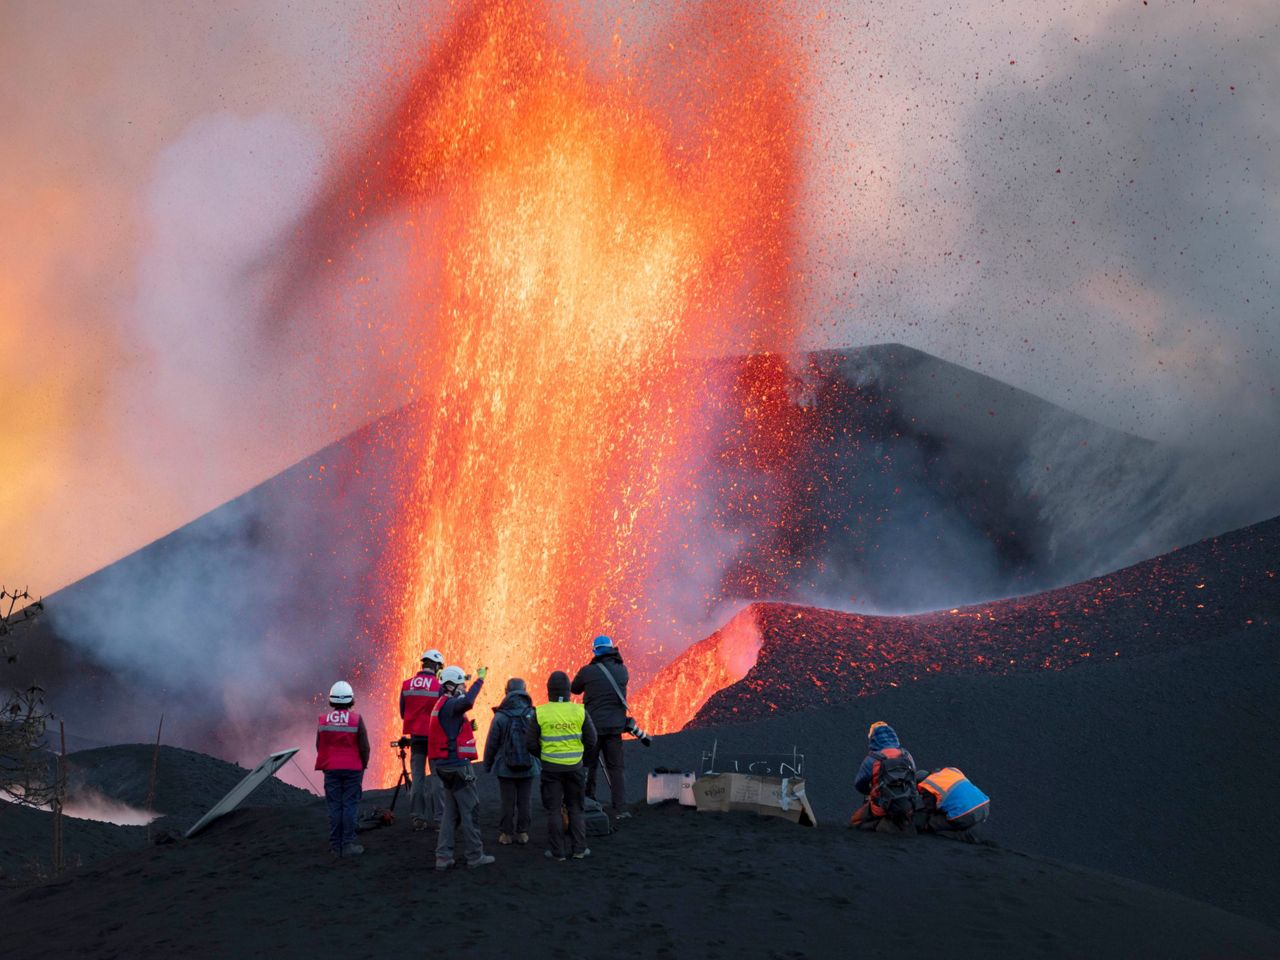 Island berubah menjadi lab terbuka bagi ahli vulkanologi yang paham teknologi